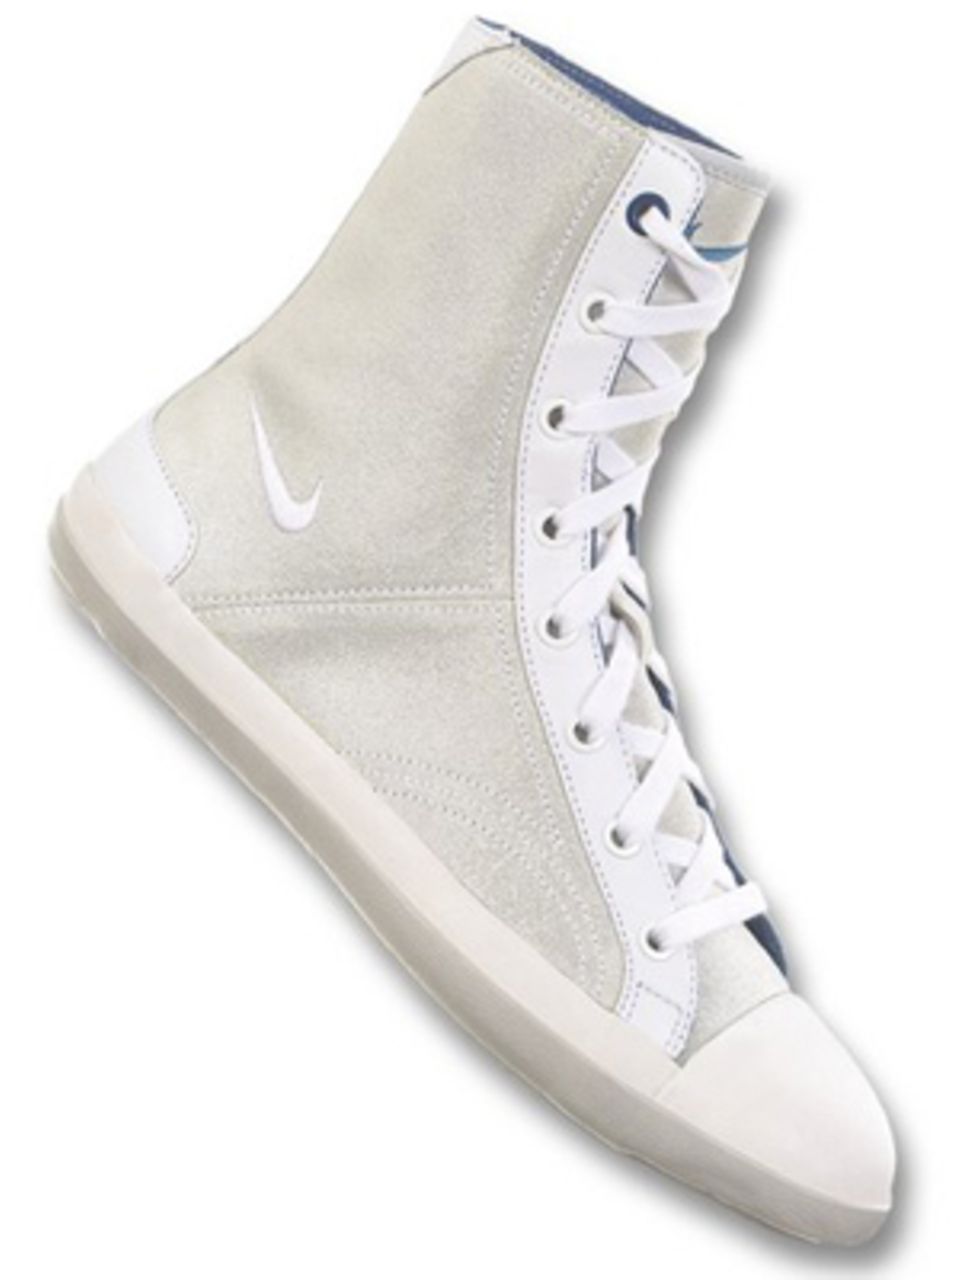 Knöchelhoher grauer Sneaker von Nike, ca. 89,99 Euro. Über www.frontlineshop.com